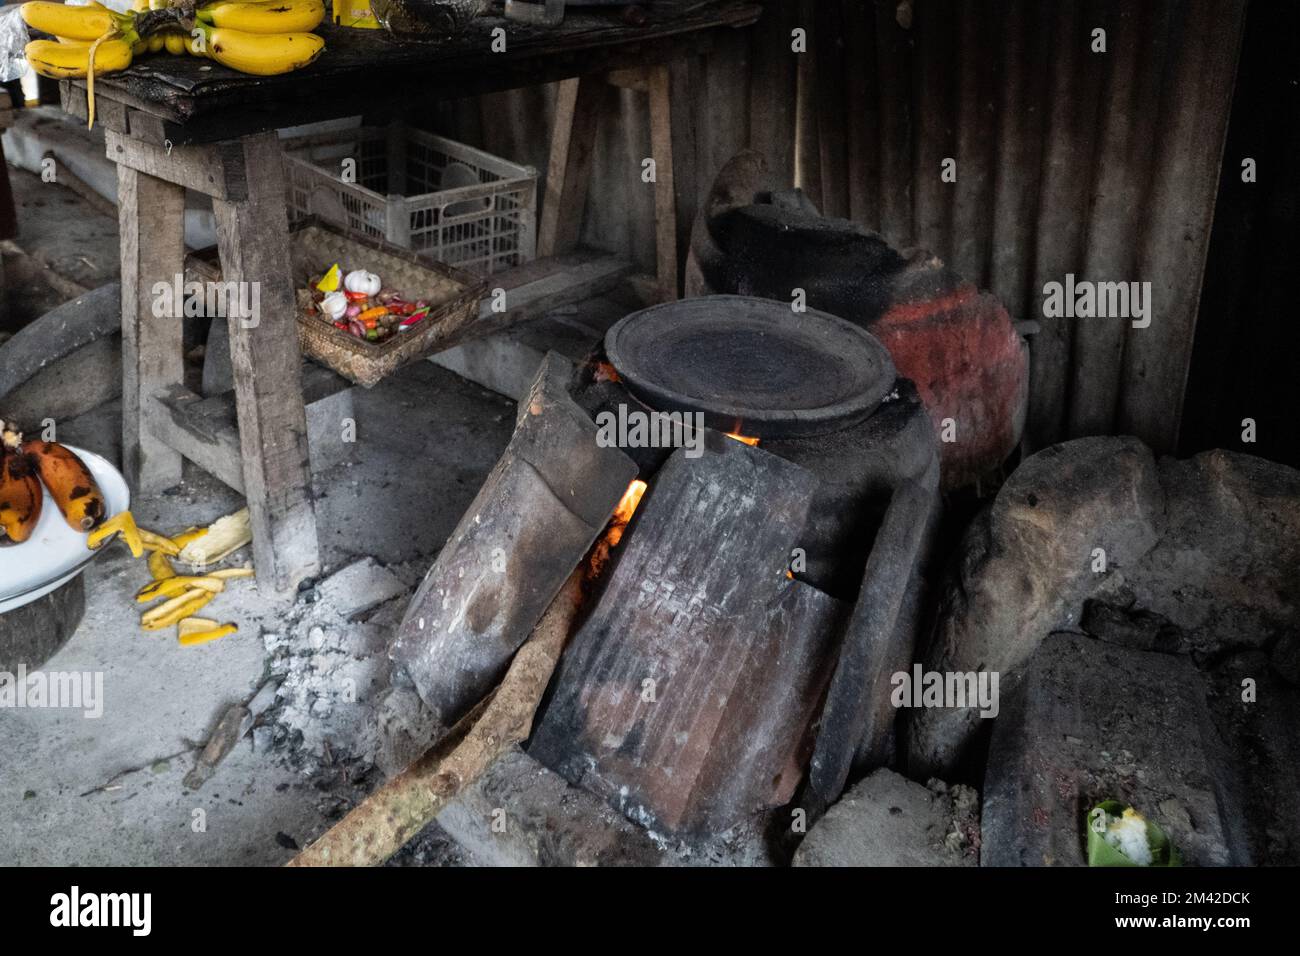 La tradizionale cucina balinese è completa di una stufa a legna in argilla. La stufa è nera perché è stata bruciata dal fuoco. Argilla e legna-sparato st Foto Stock